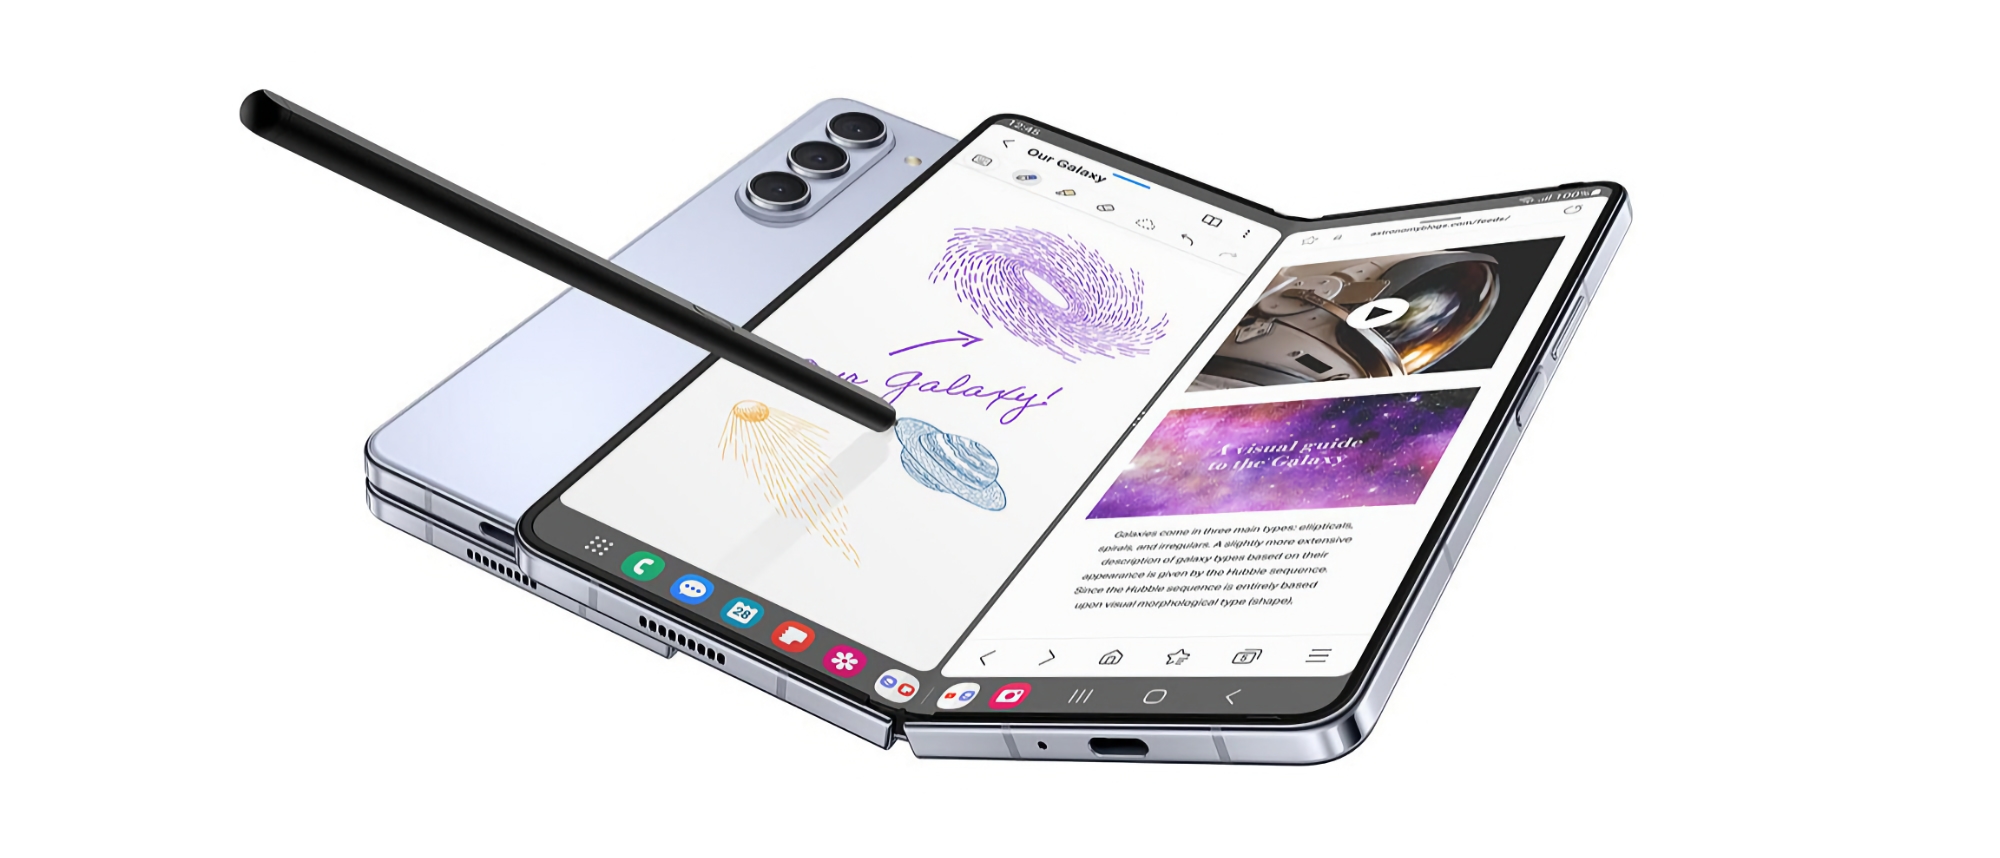 Le smartphone pliable Samsung Galaxy Fold 5 peut être acheté sur Amazon avec une réduction de 300 $.